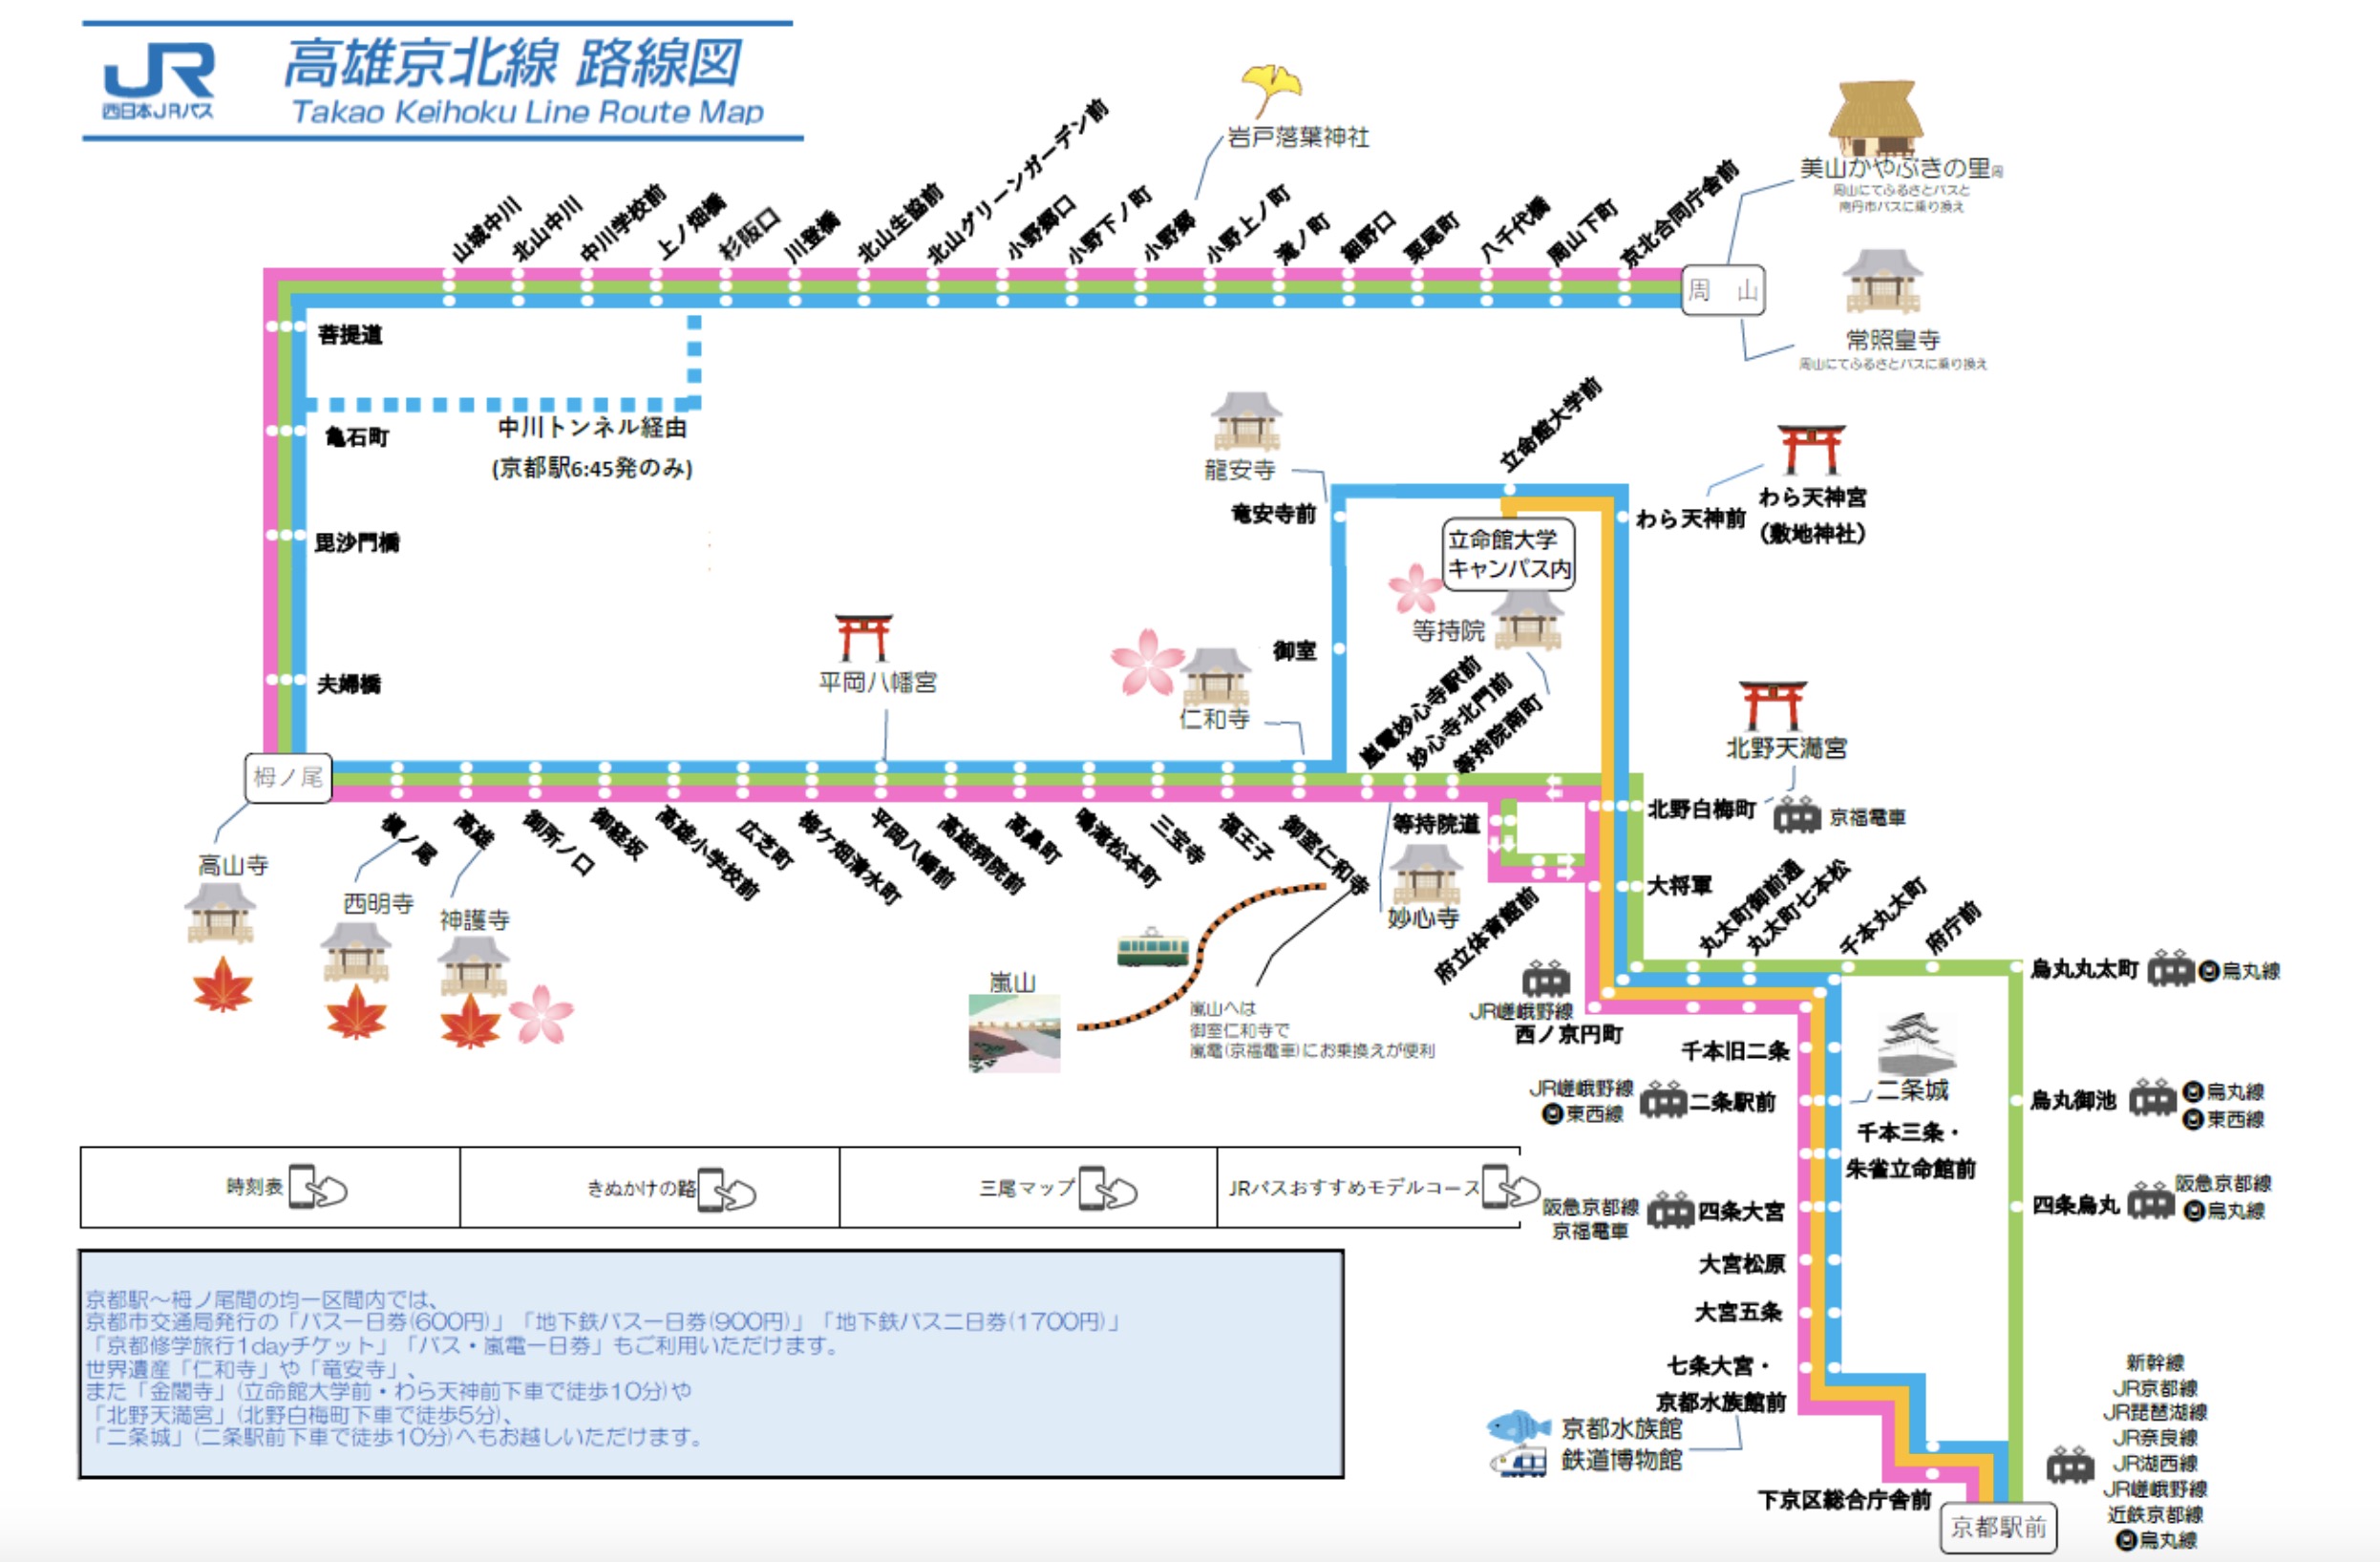 京都地下鐵巴士一日券、二日券(使用區間、購買方式、該不該買)